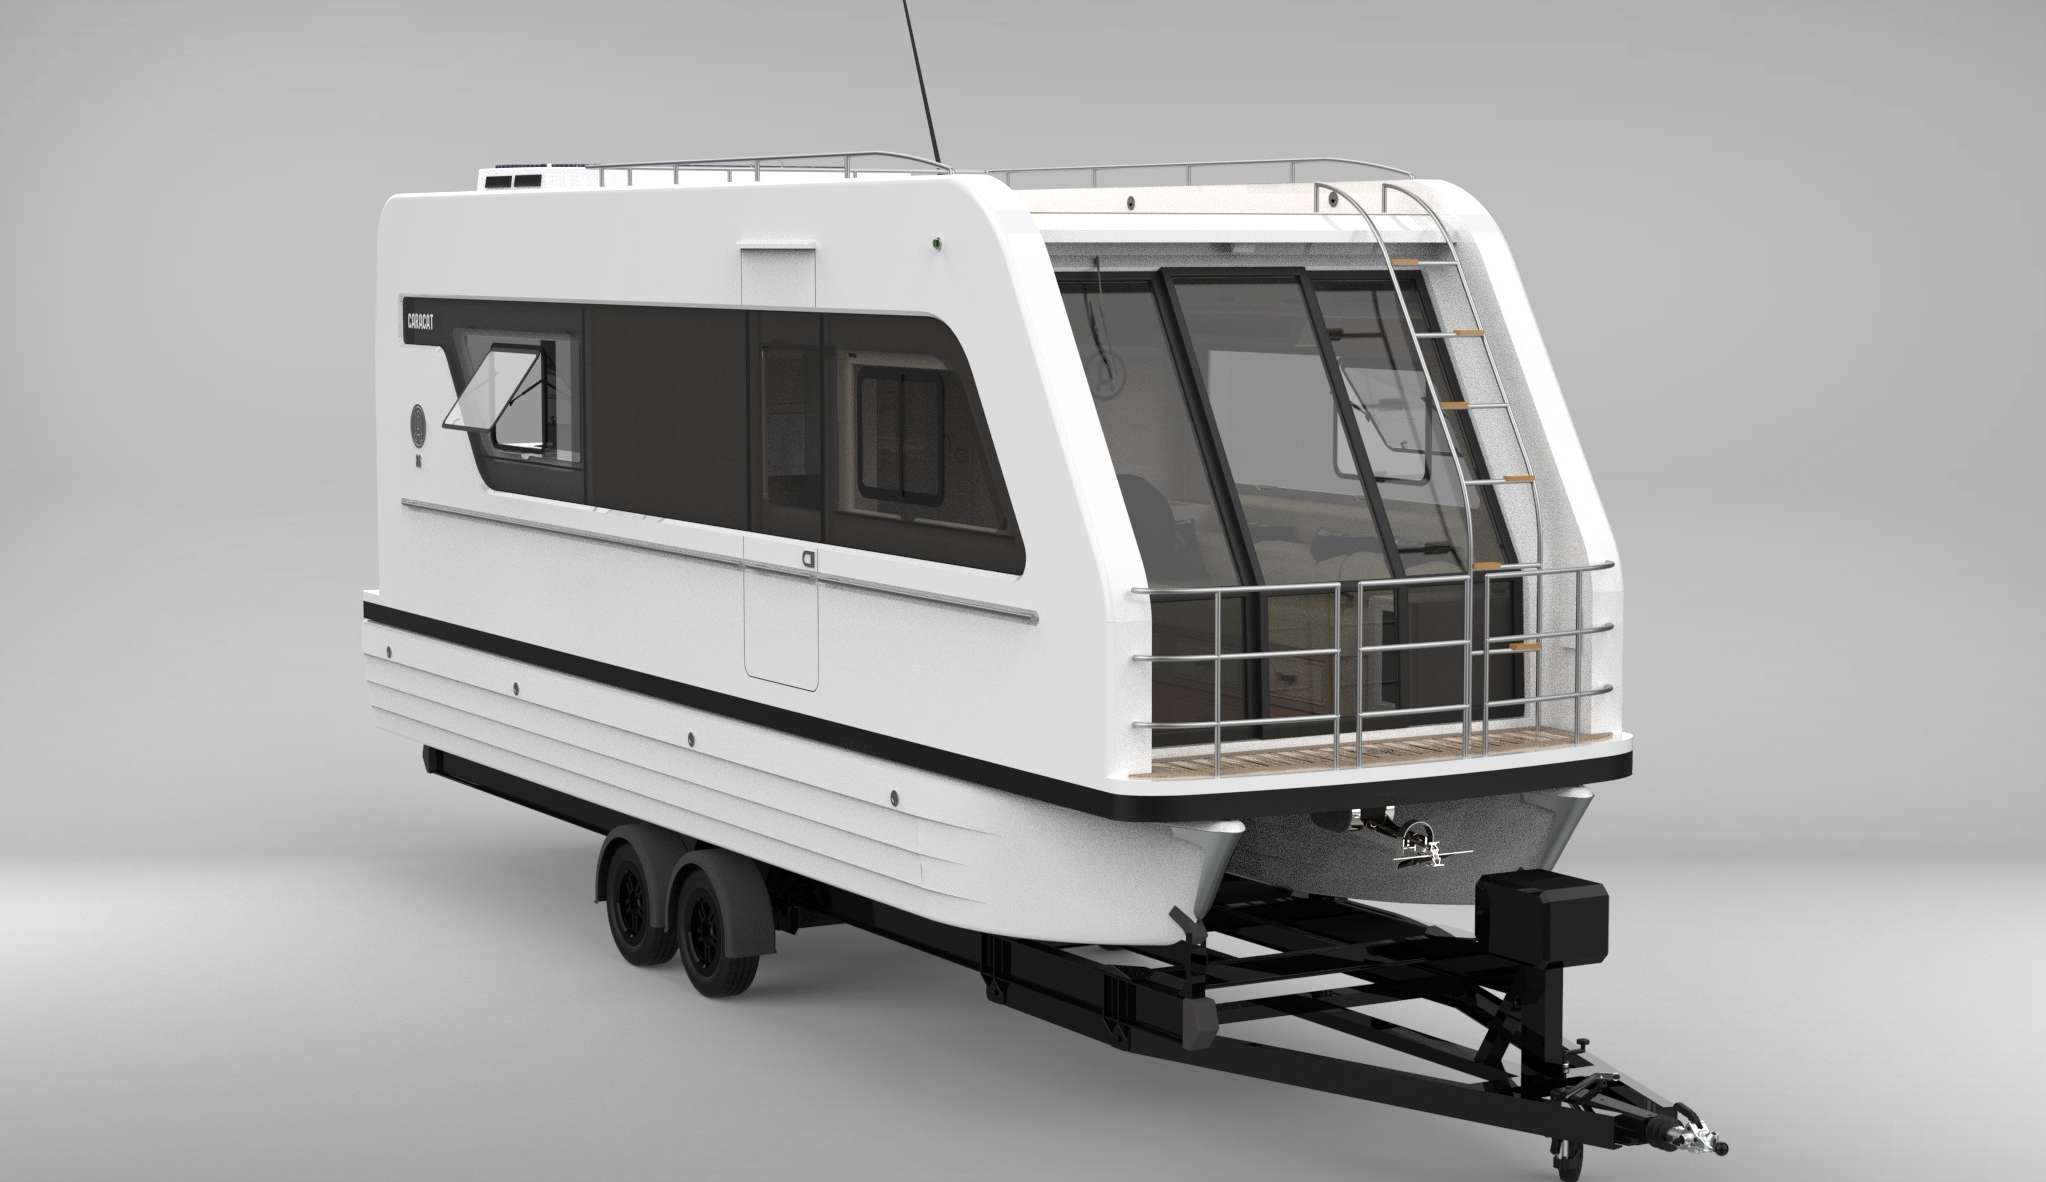 Conheça o luxuoso trailer Caracat 860 que funcionará tanto em terra quanto no mar